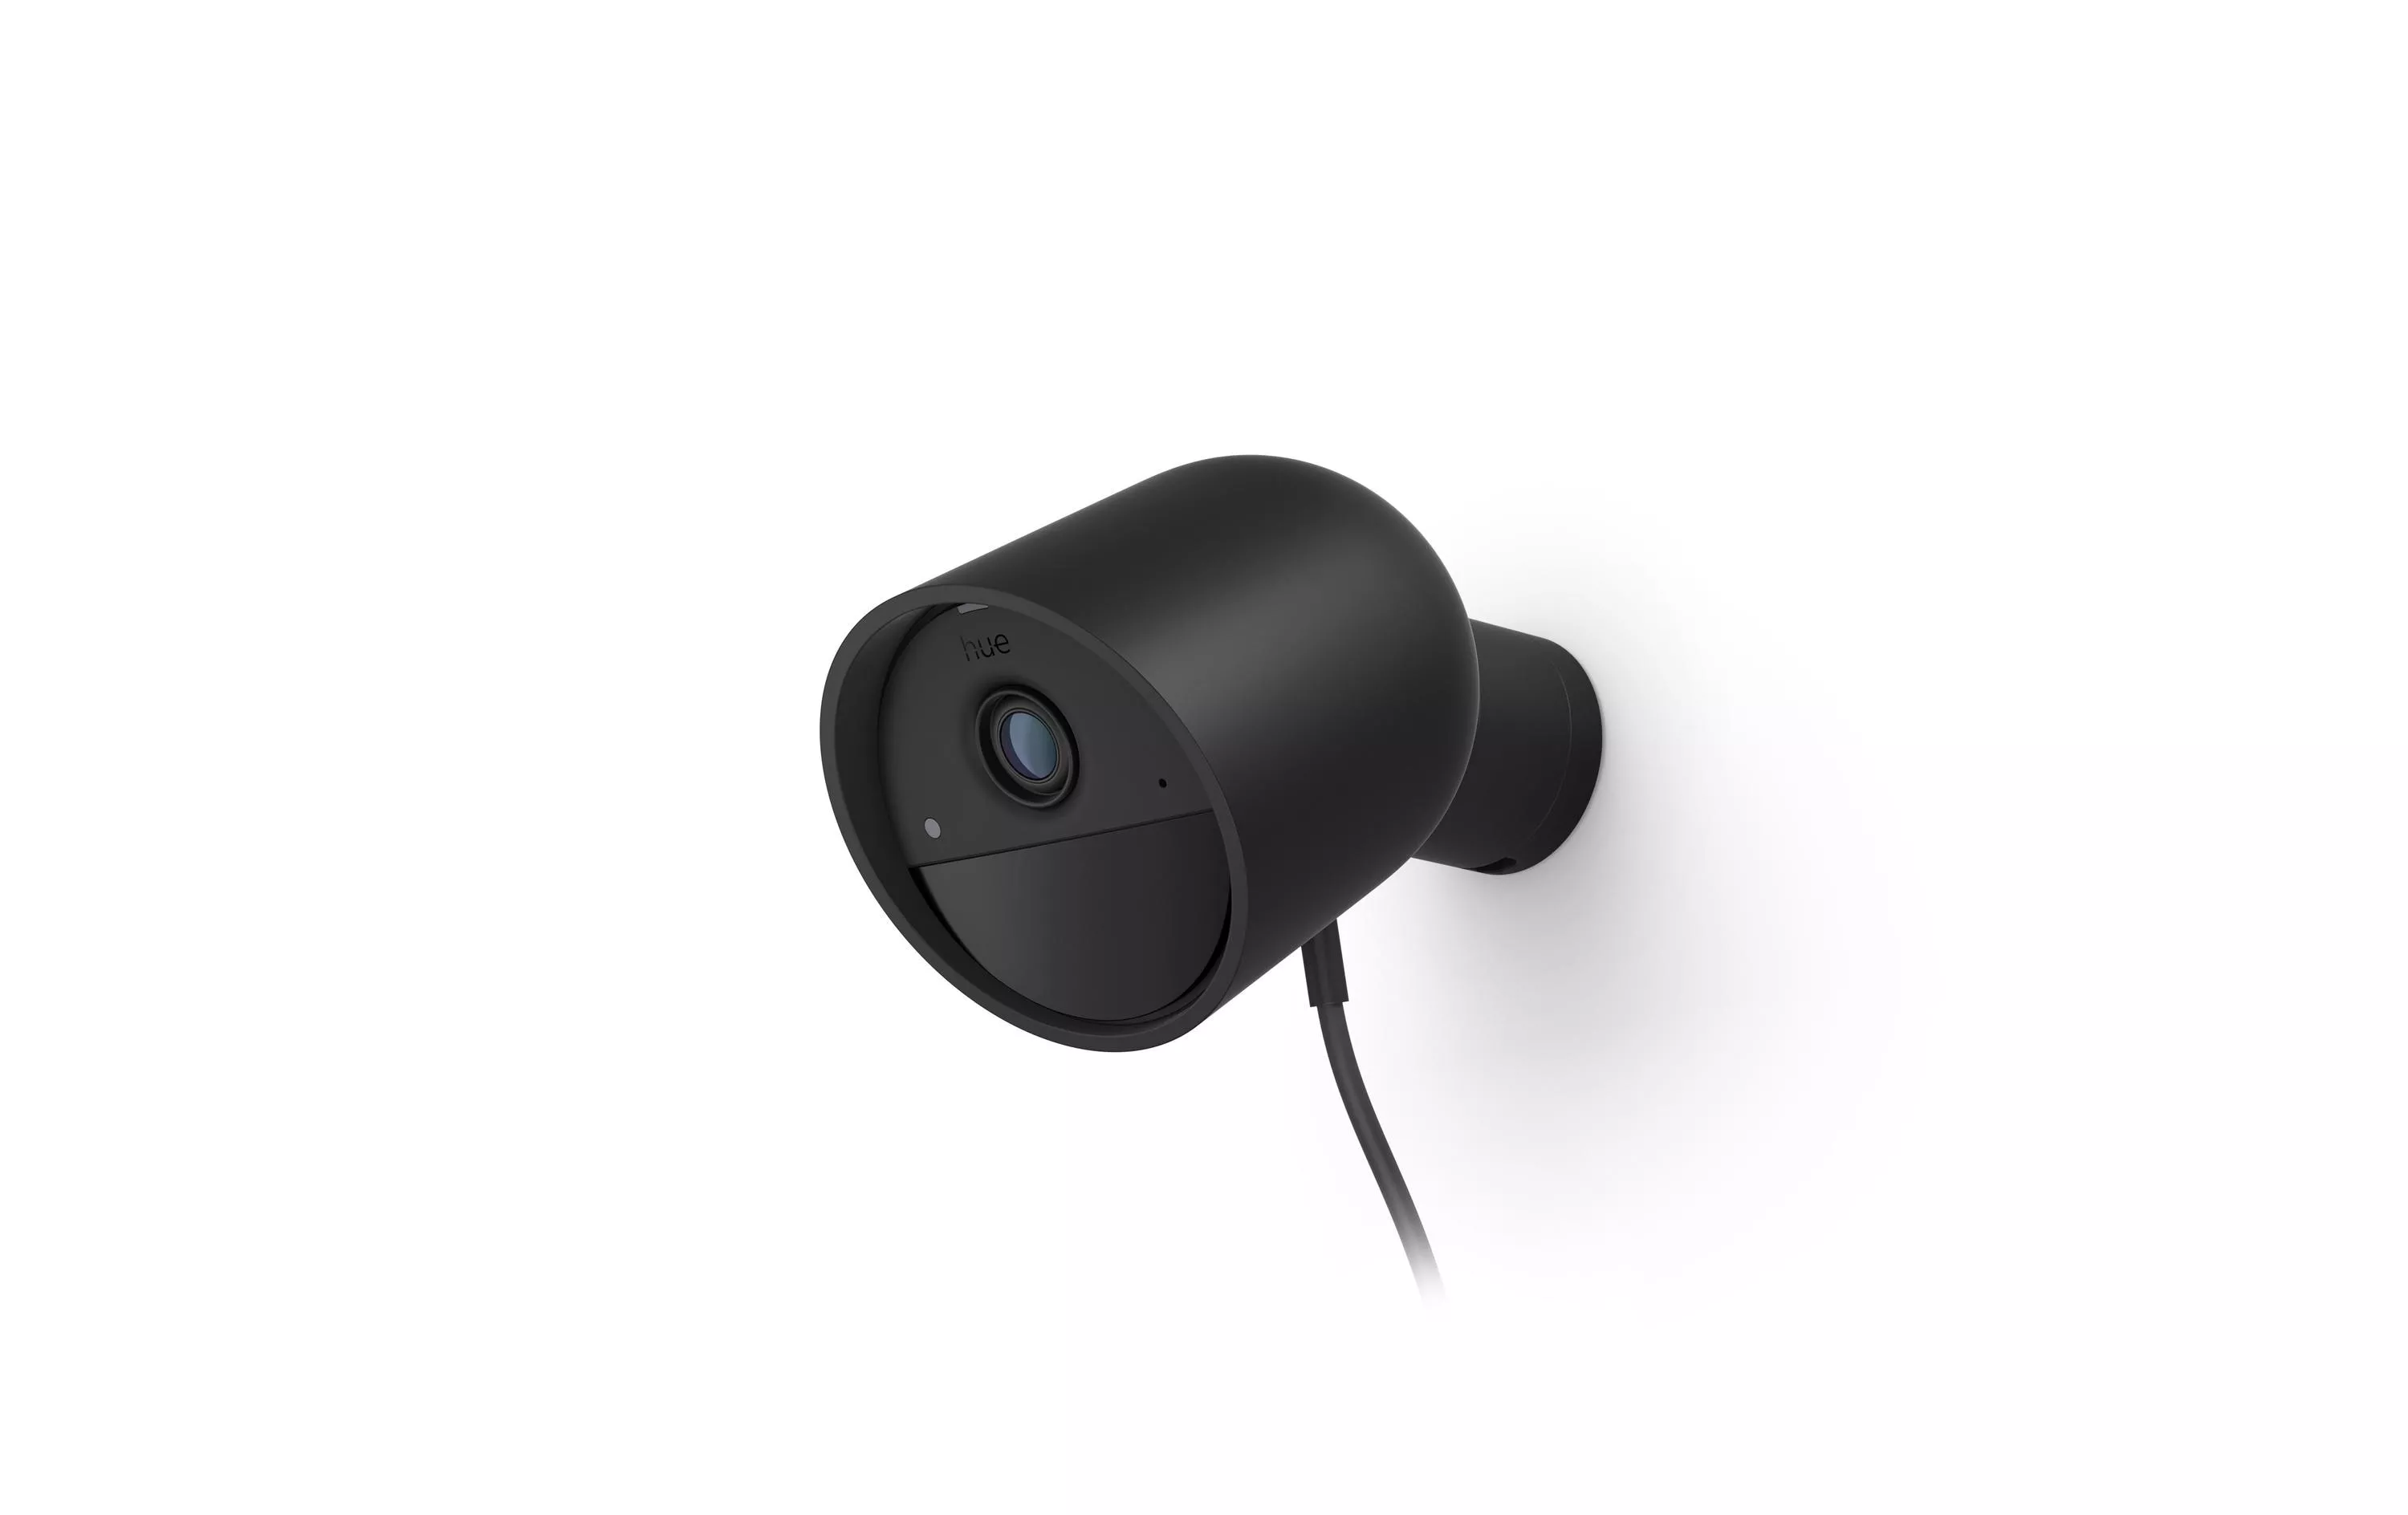 Caméra filaire Secure noire - Camera surveillance